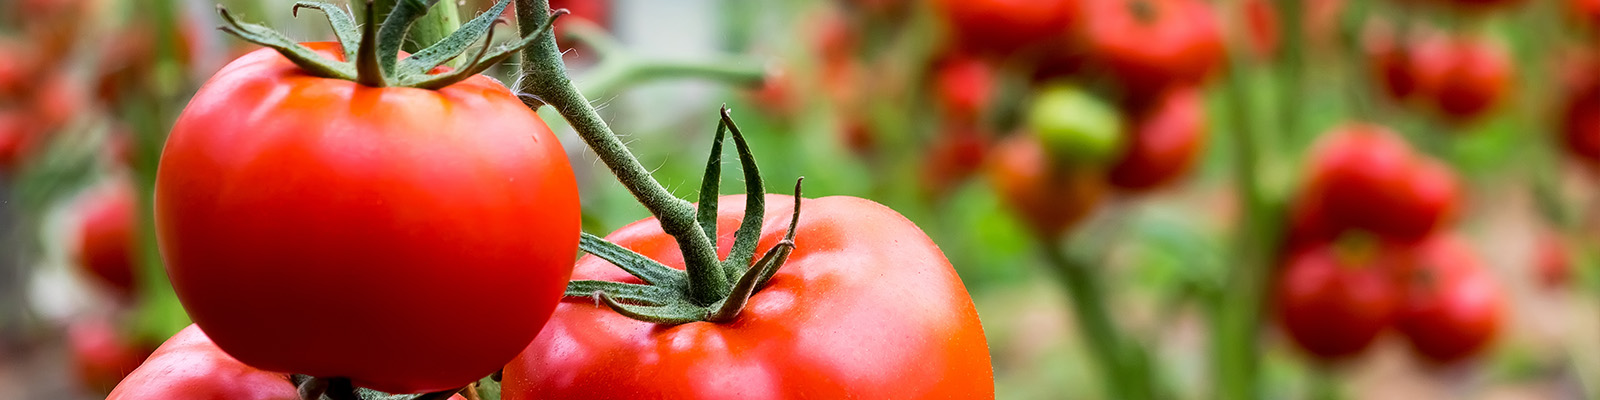 植物根的生存之道 - 揭示番茄植物的乾旱防禦機制